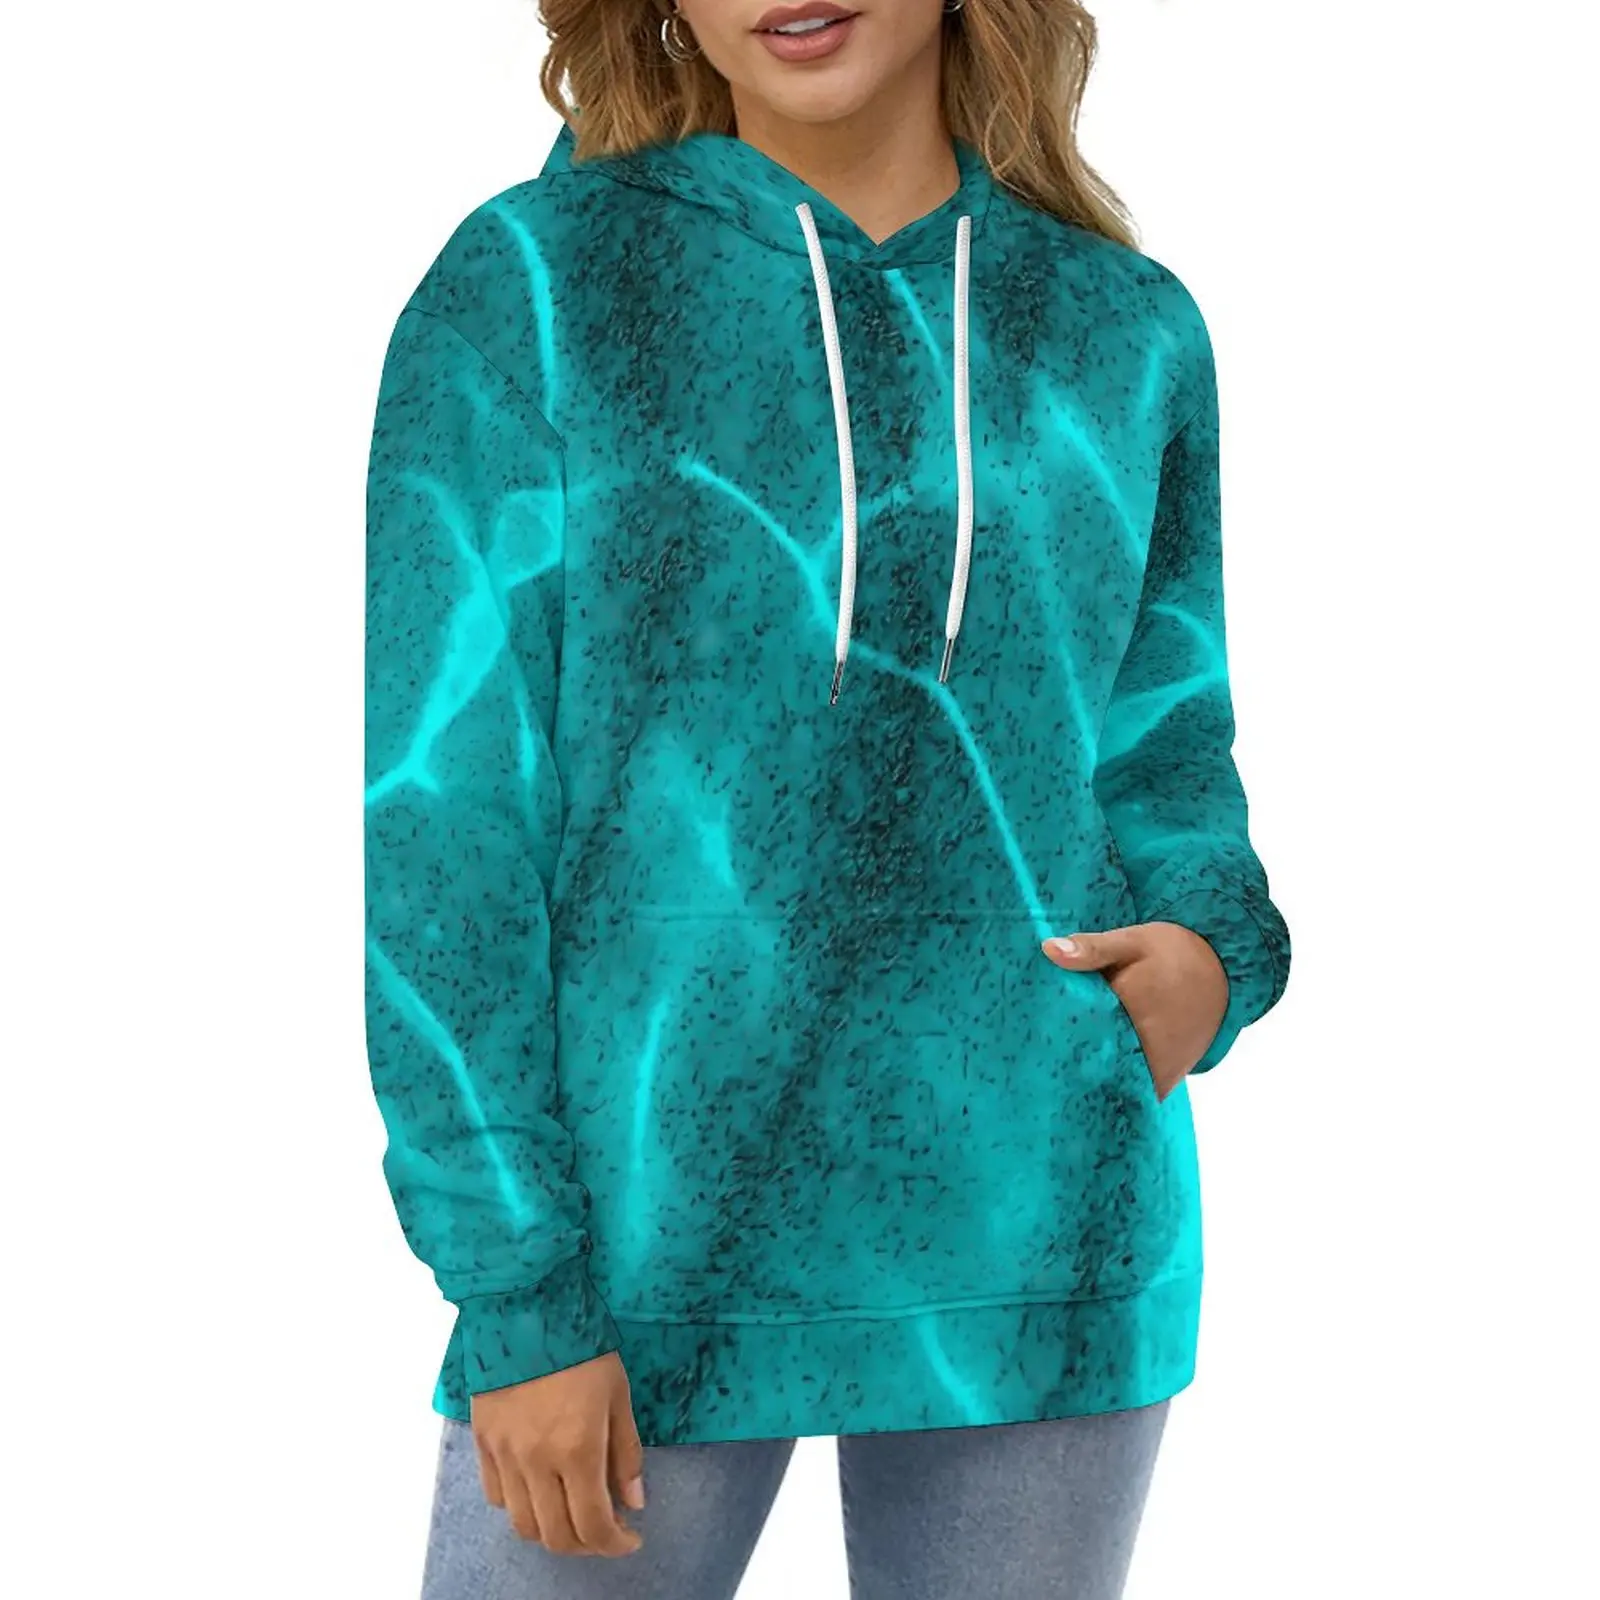 

Teal Shallow Water Hoodies Long Sleeve Crystalline Sea Aesthetic Casual Hoodie Hip Hop Oversized Print Loose Hooded Sweatshirts